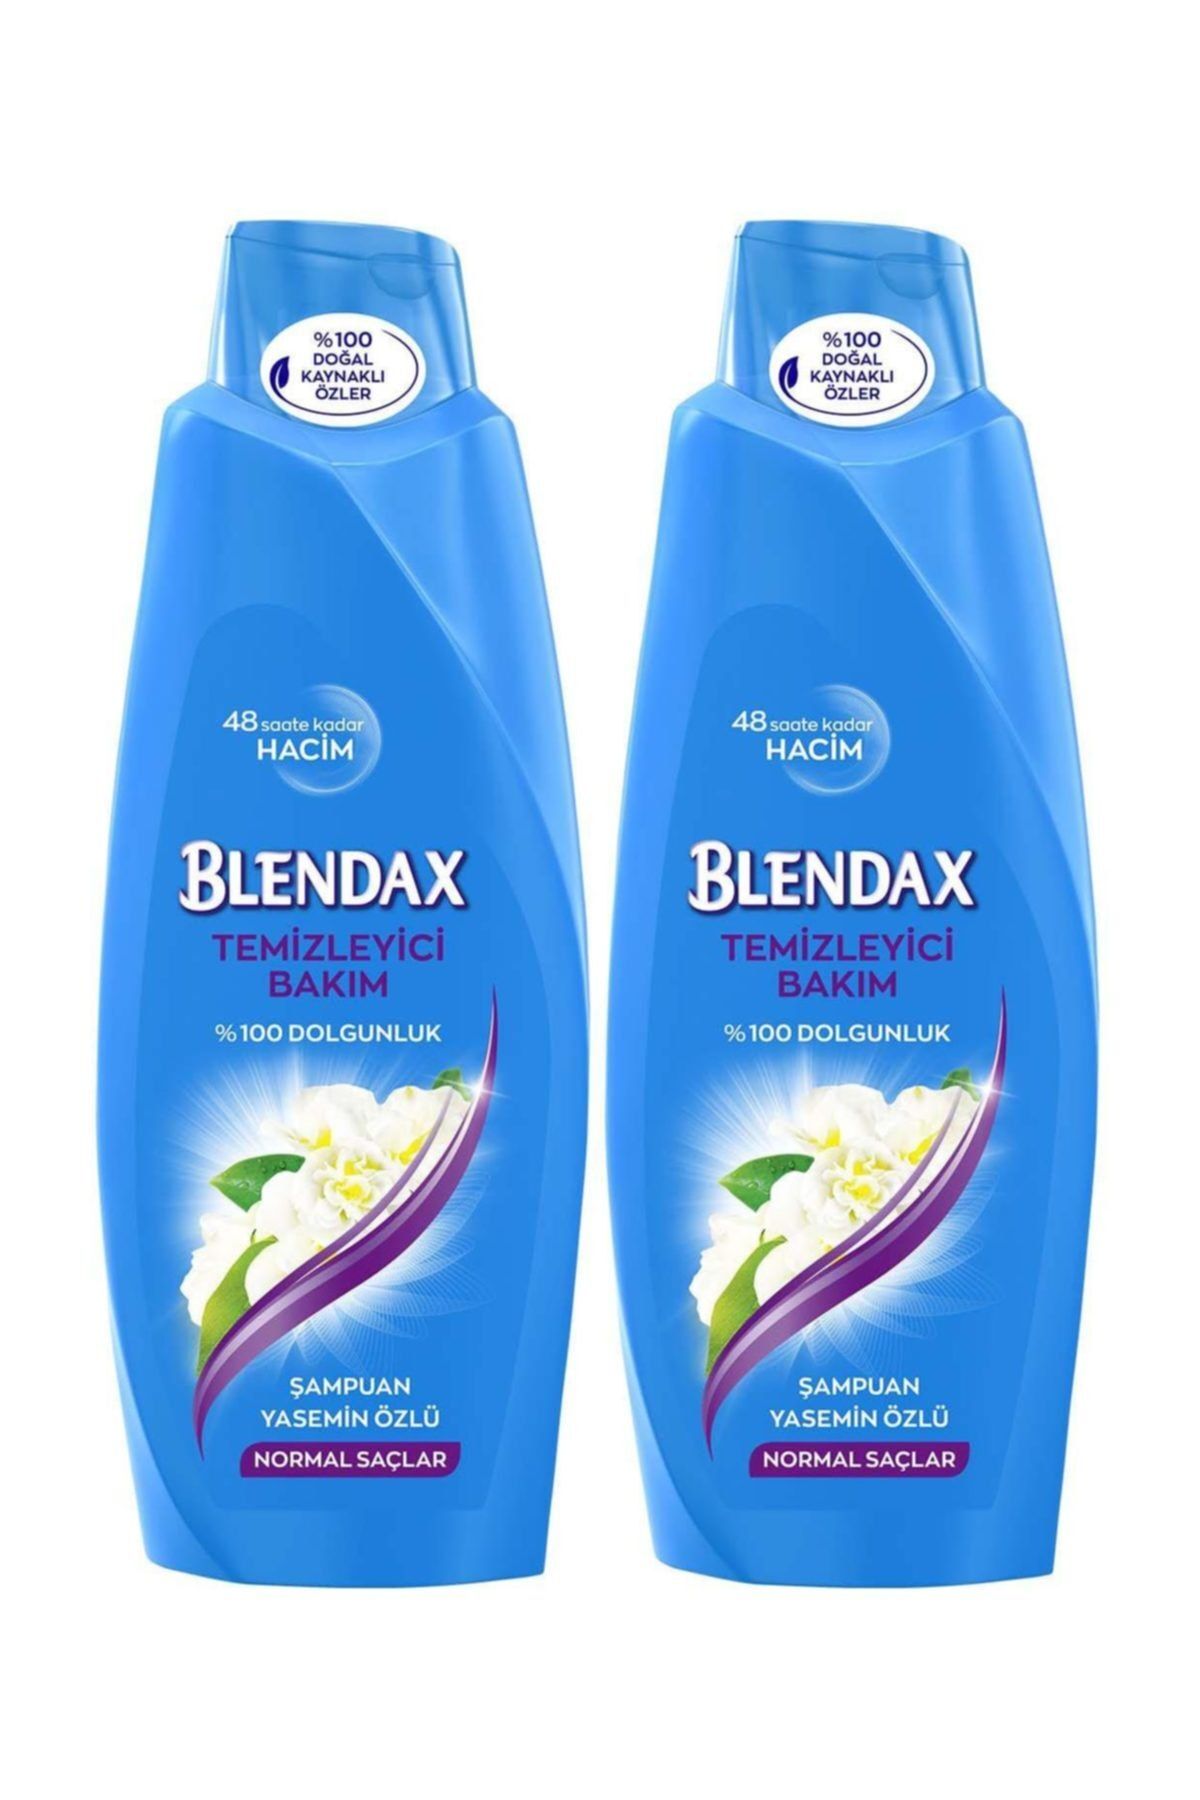 Blendax Yasemin Özlü Şampuan 550 ml X 2 Adet